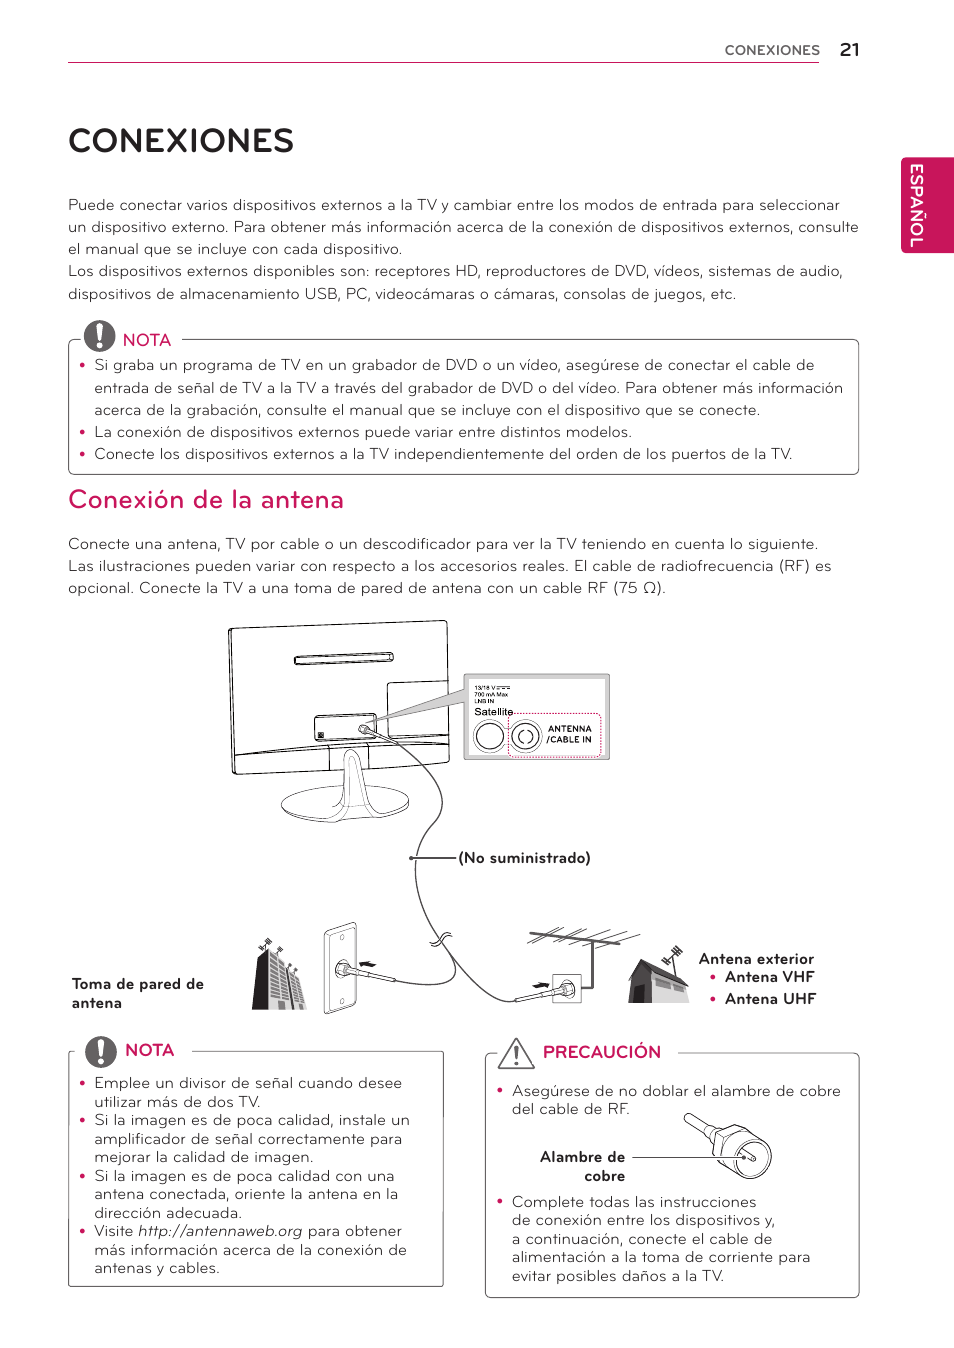 Conexiones, Conexión de la antena | LG 24MS53S-PZ Manual del usuario | Página 21 / 46